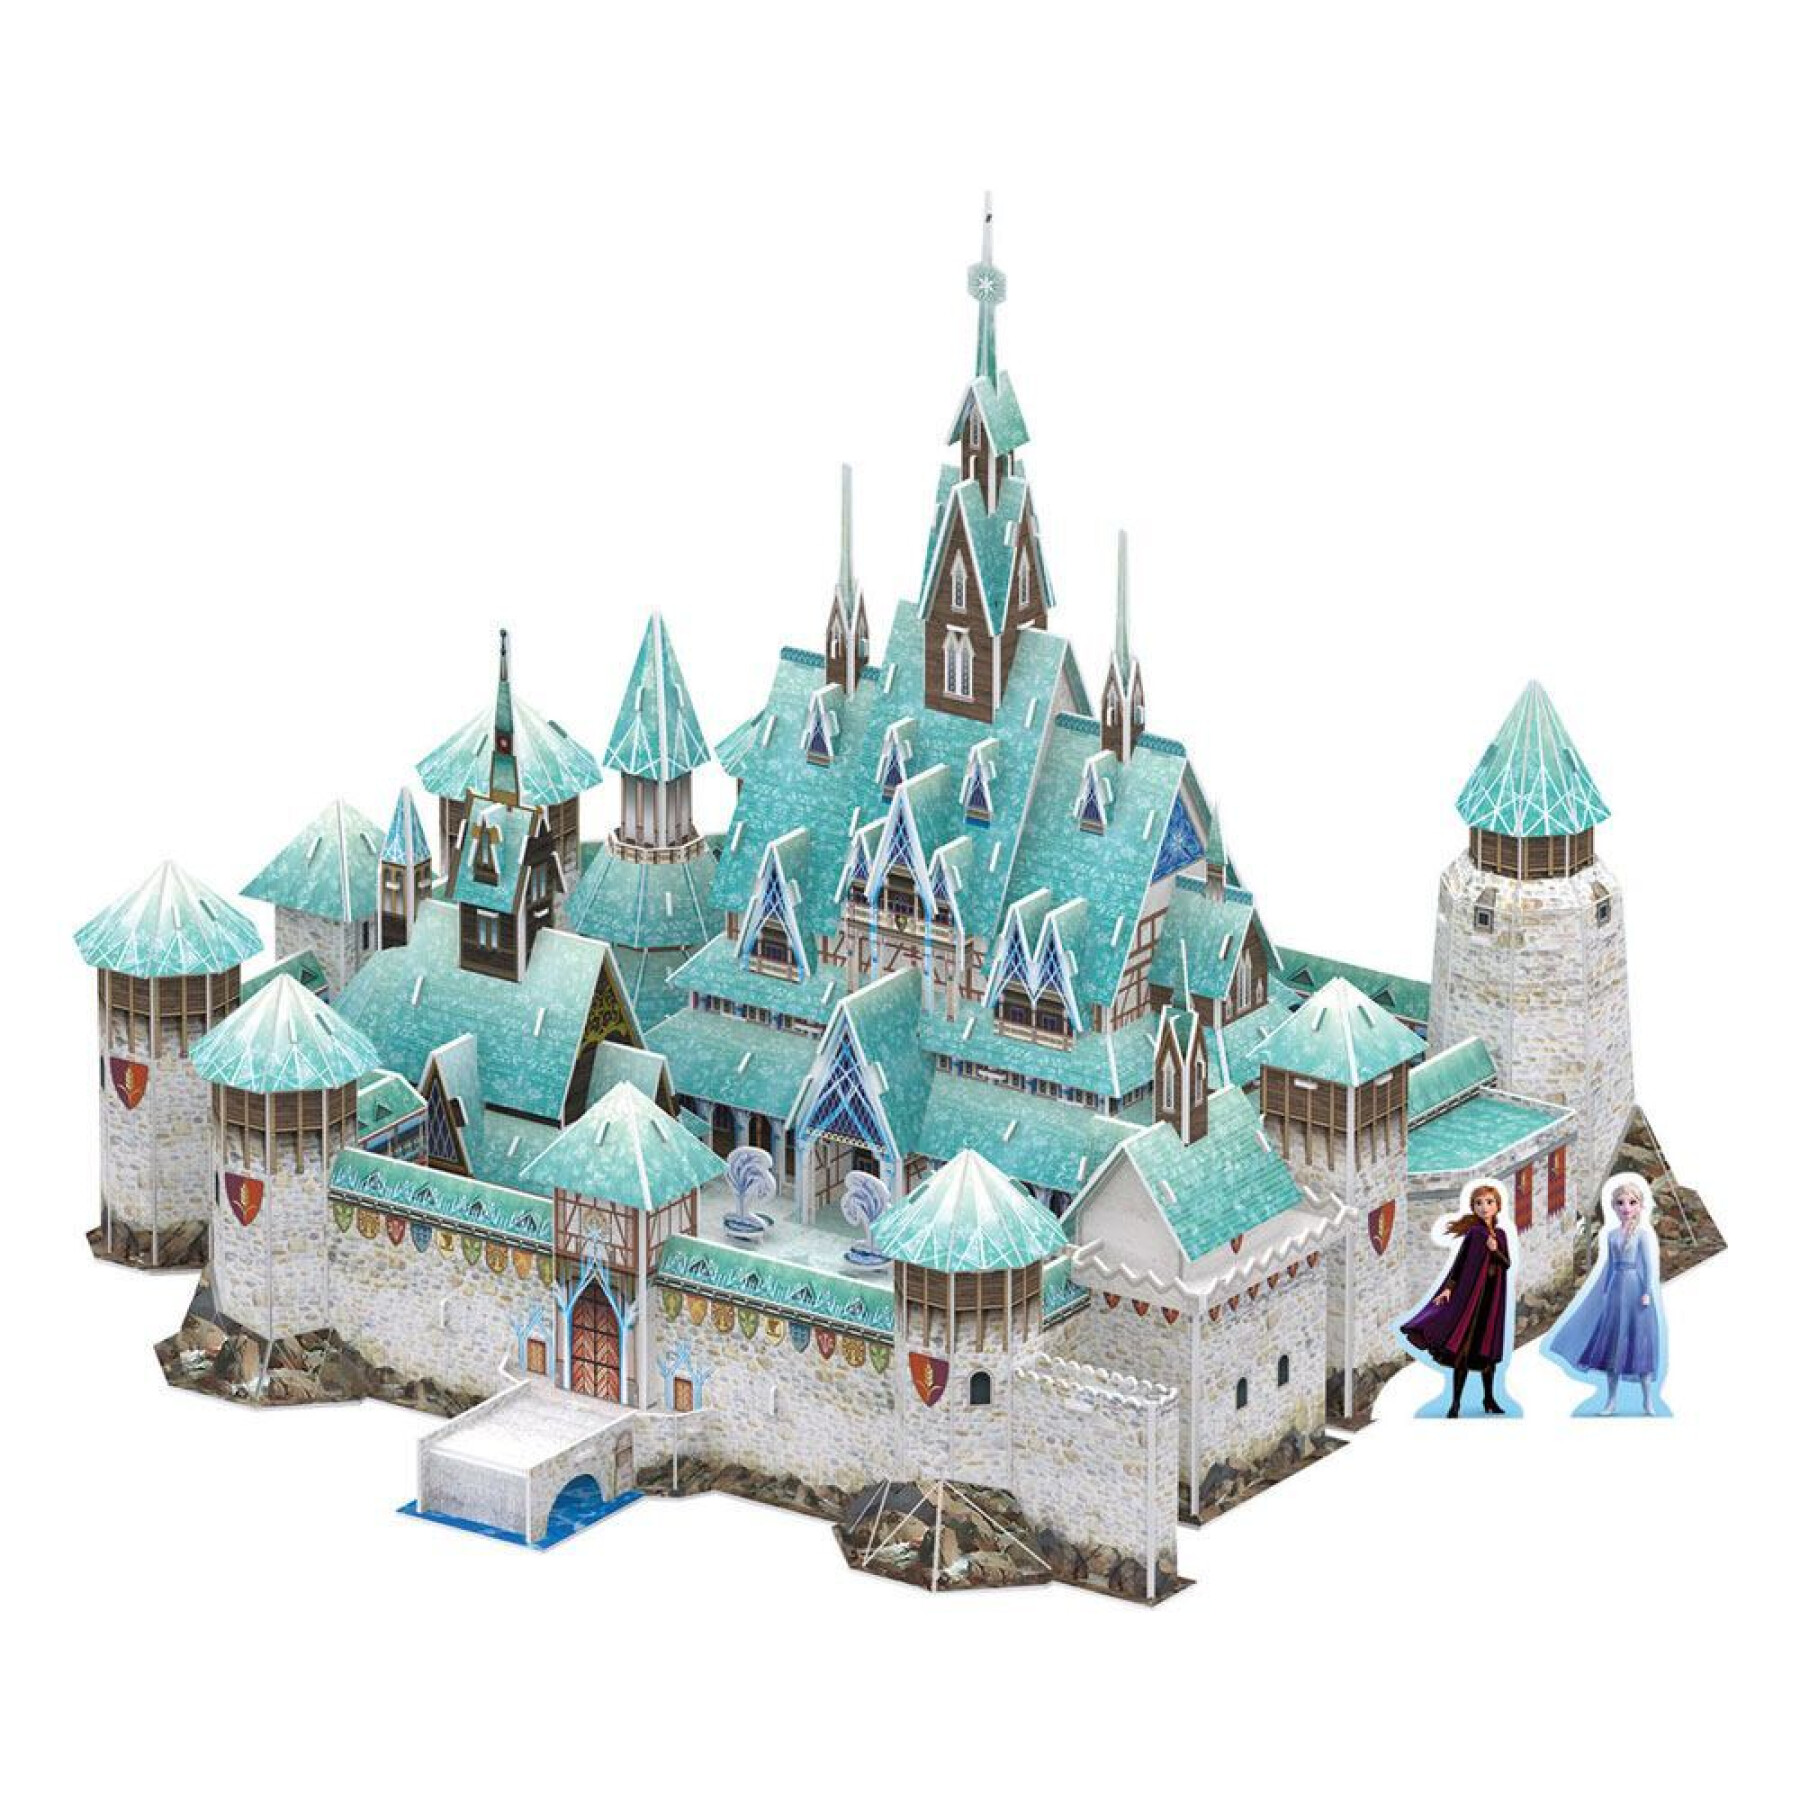 Snow Queen 2 3d arendelle castle puzzle Revell